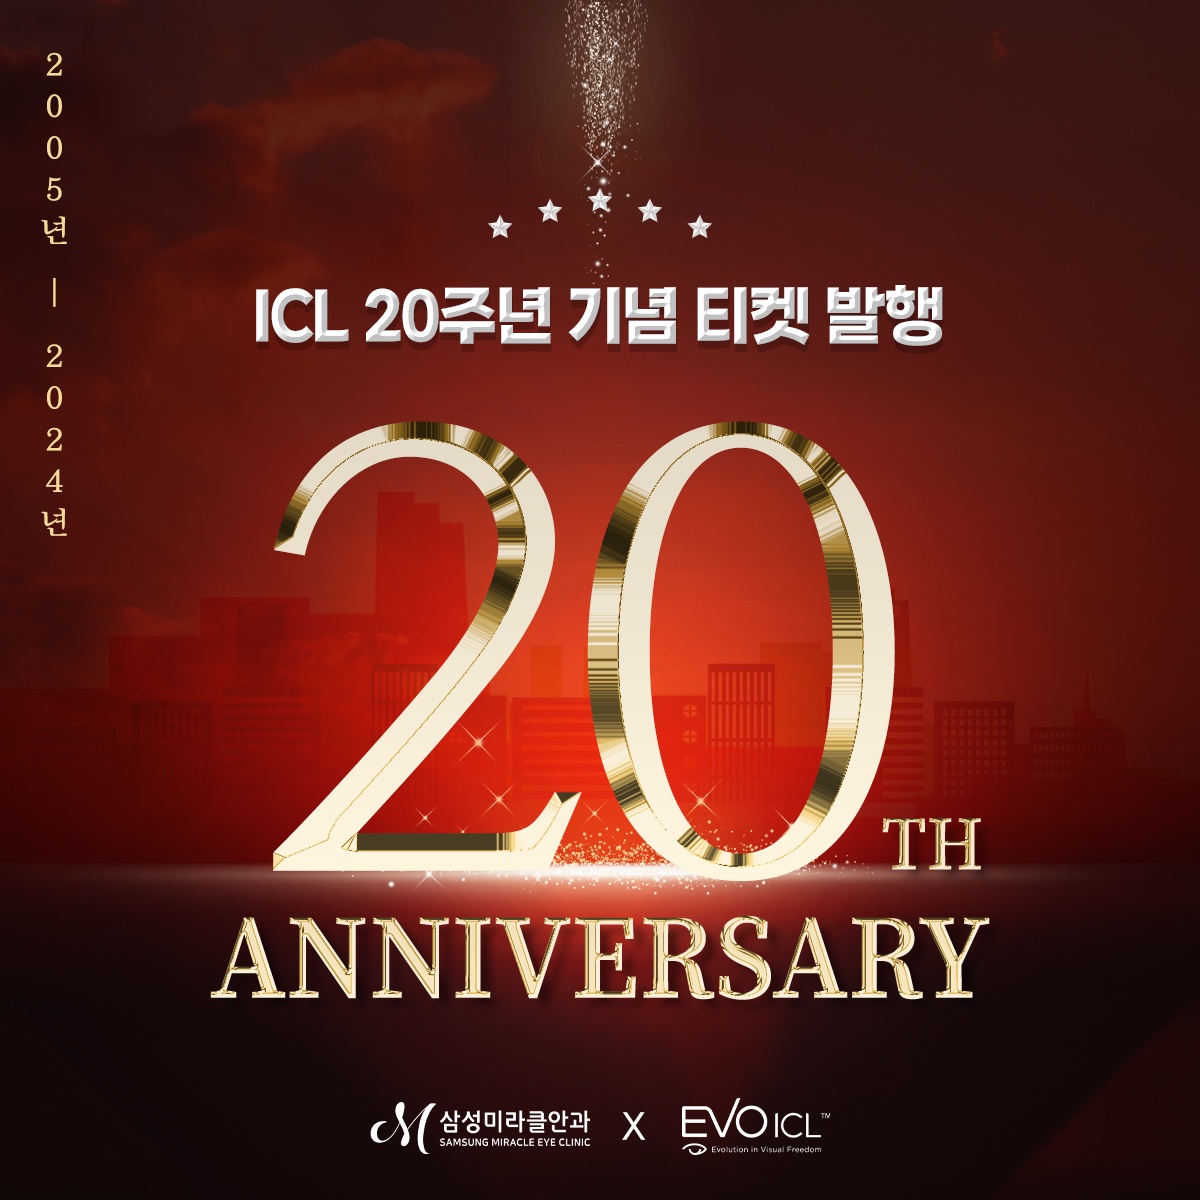 ICL 20주년 기념 티켓 발행